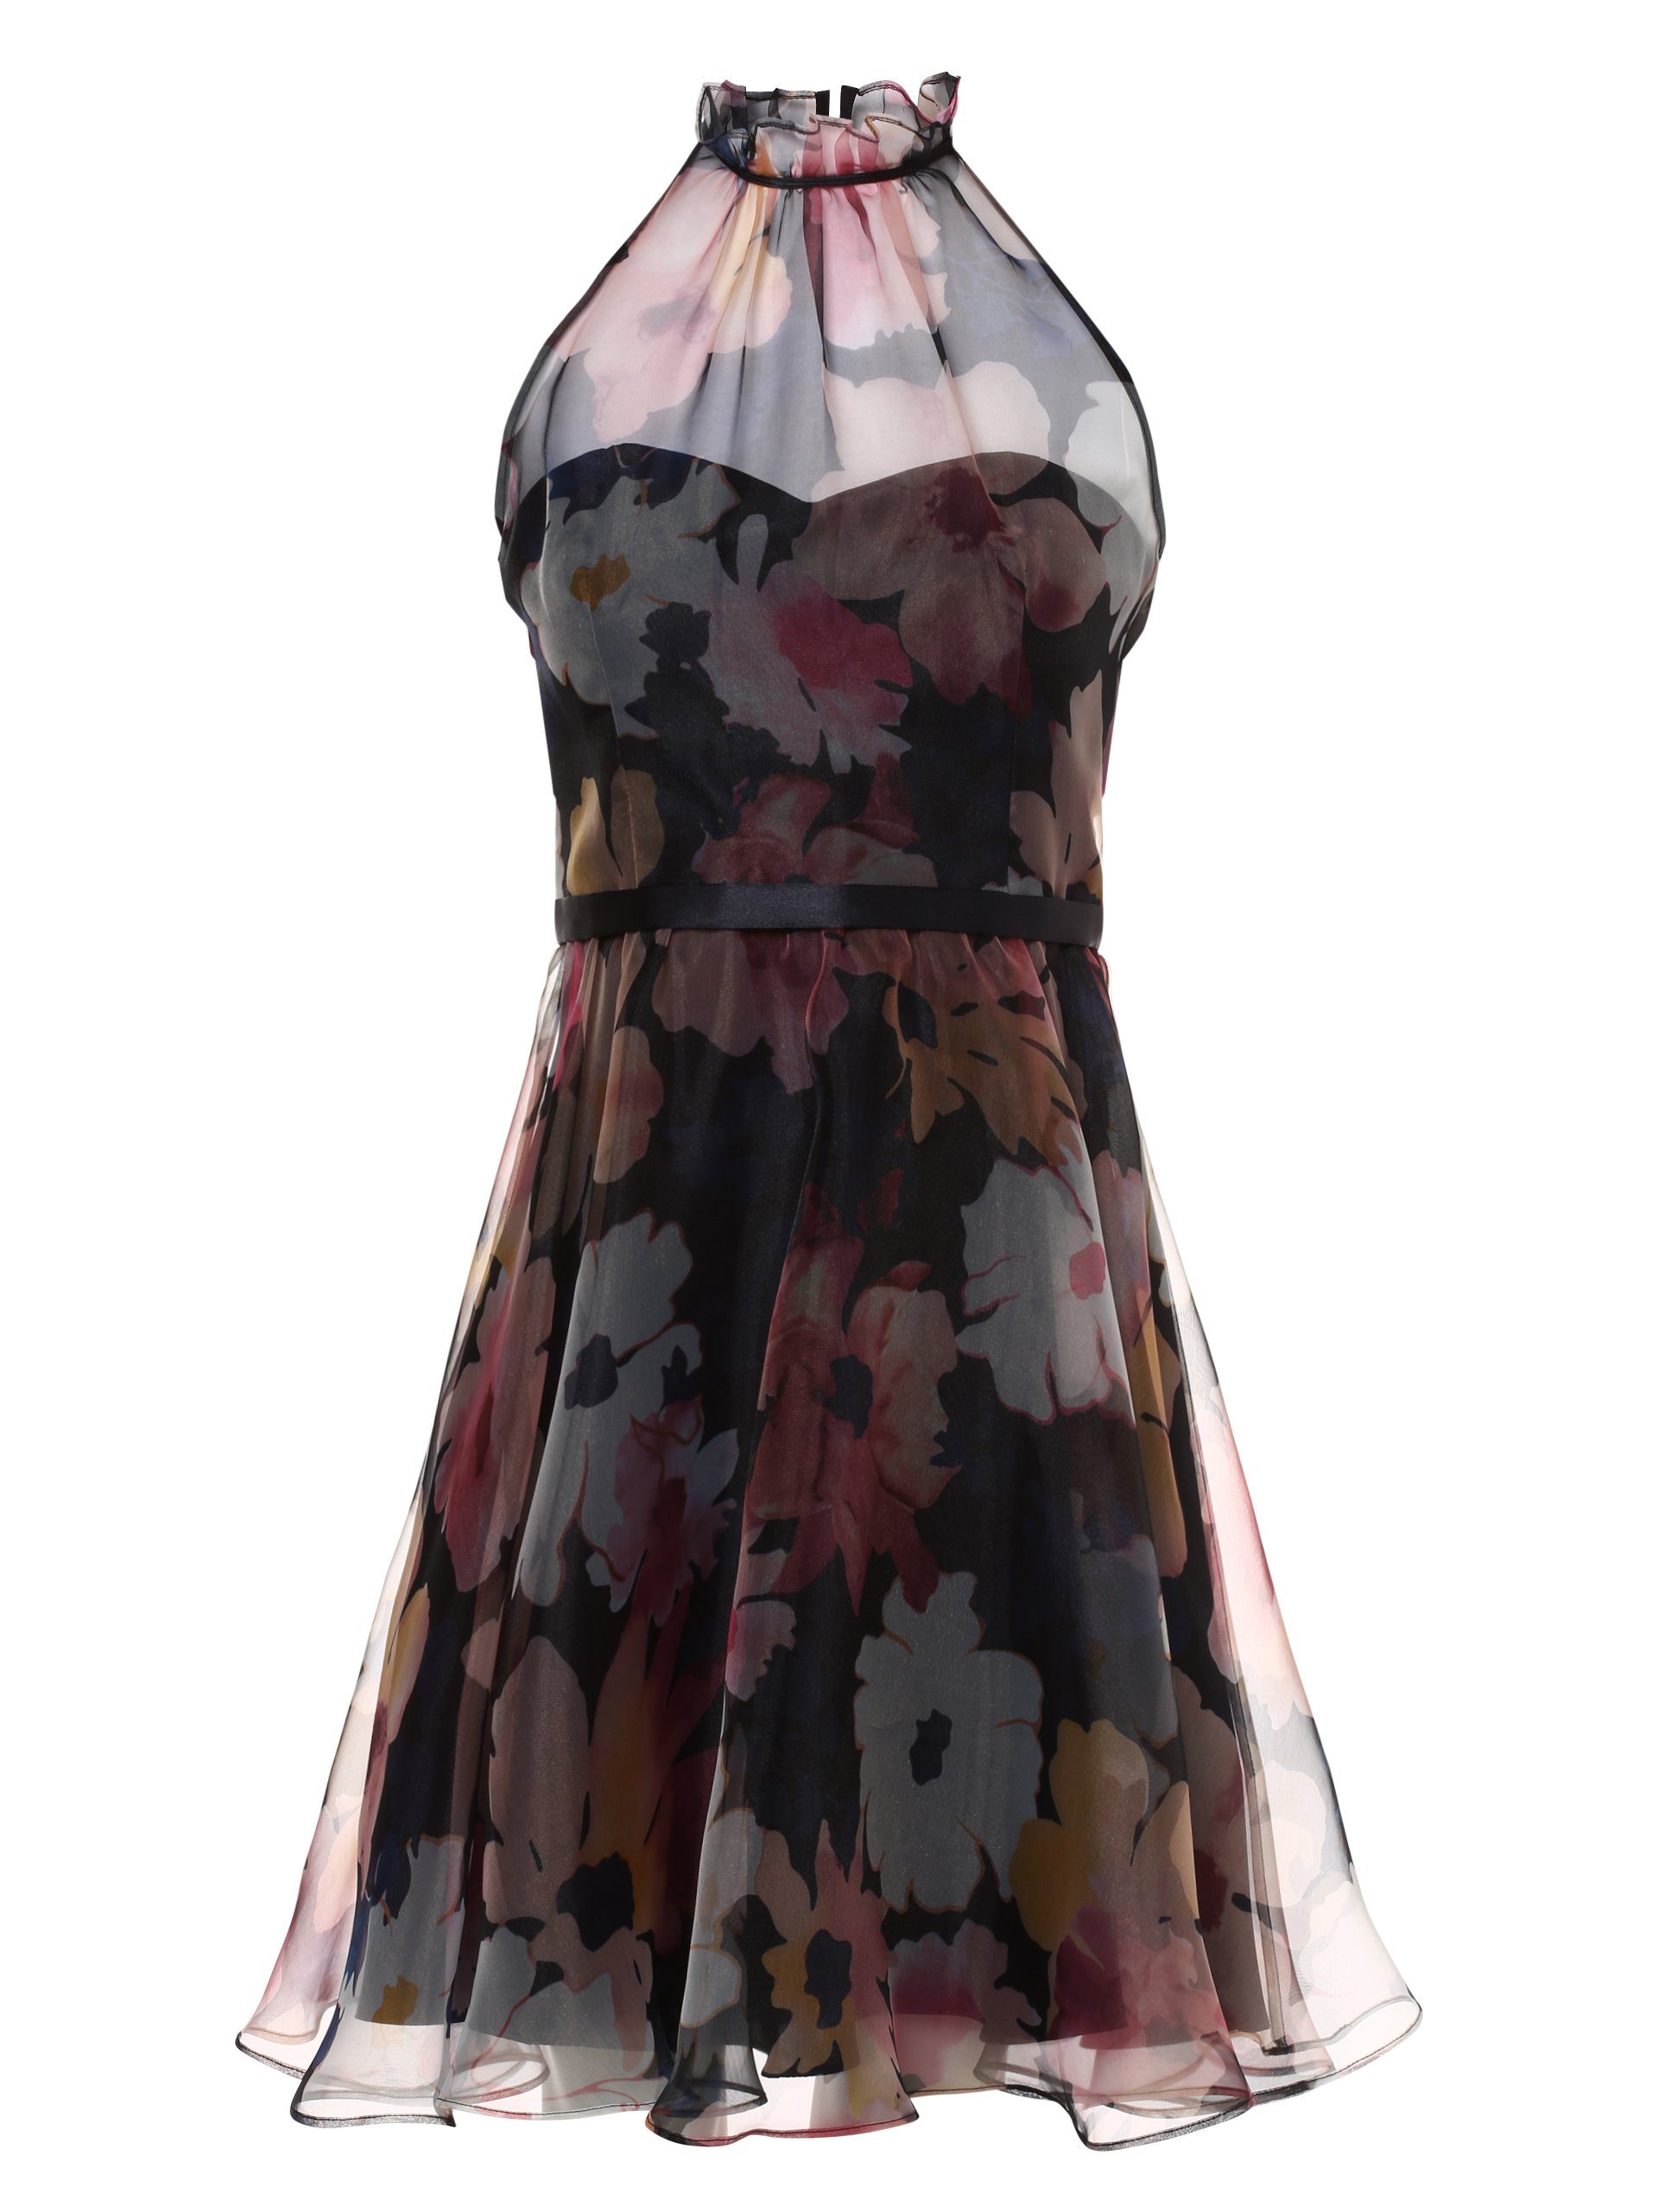 VM Vera Mont Abendkleid online kaufen | OTTO